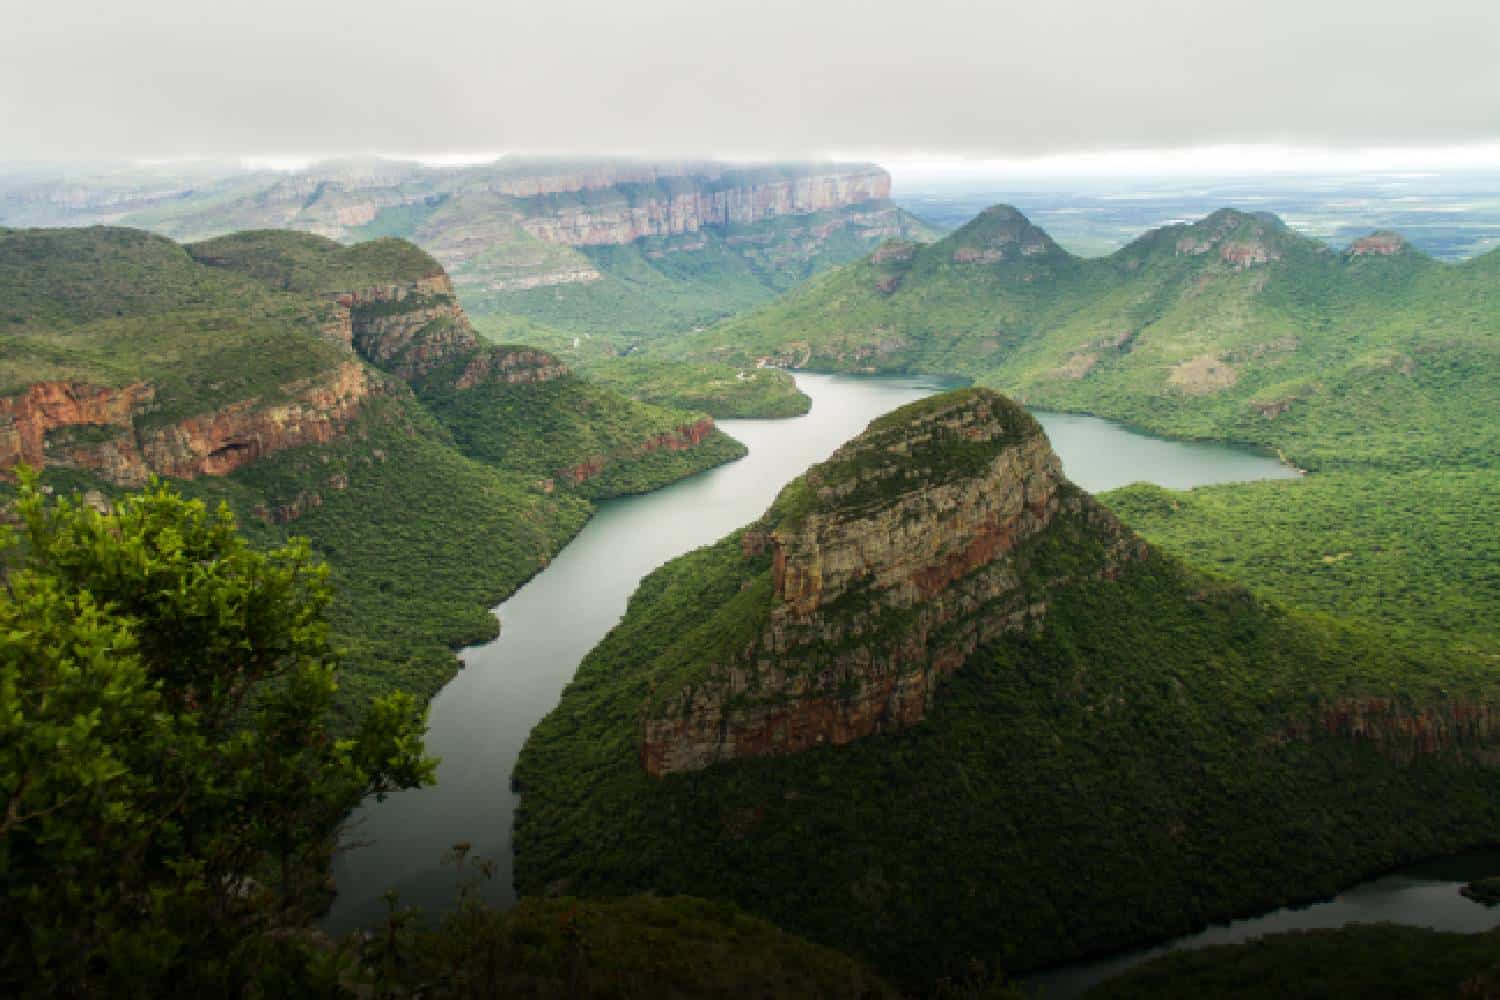 mpumalanga travel guide Blyde river canyon